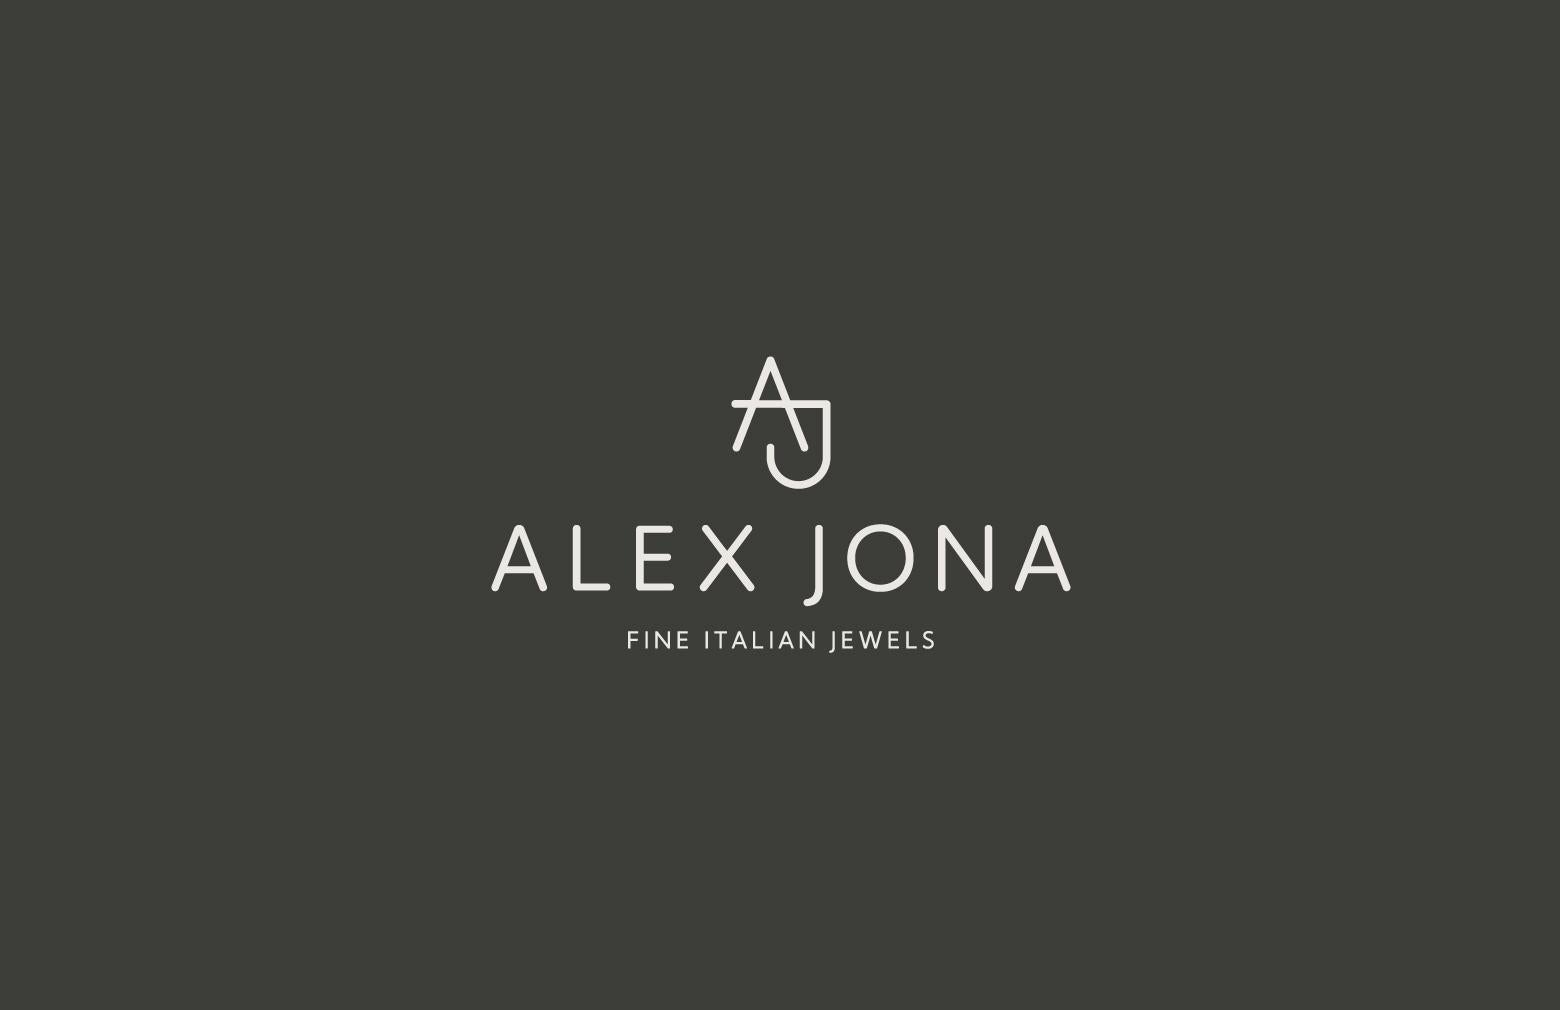 Alex Jona White Diamond White Gold Love Pendant Necklace For Sale 4